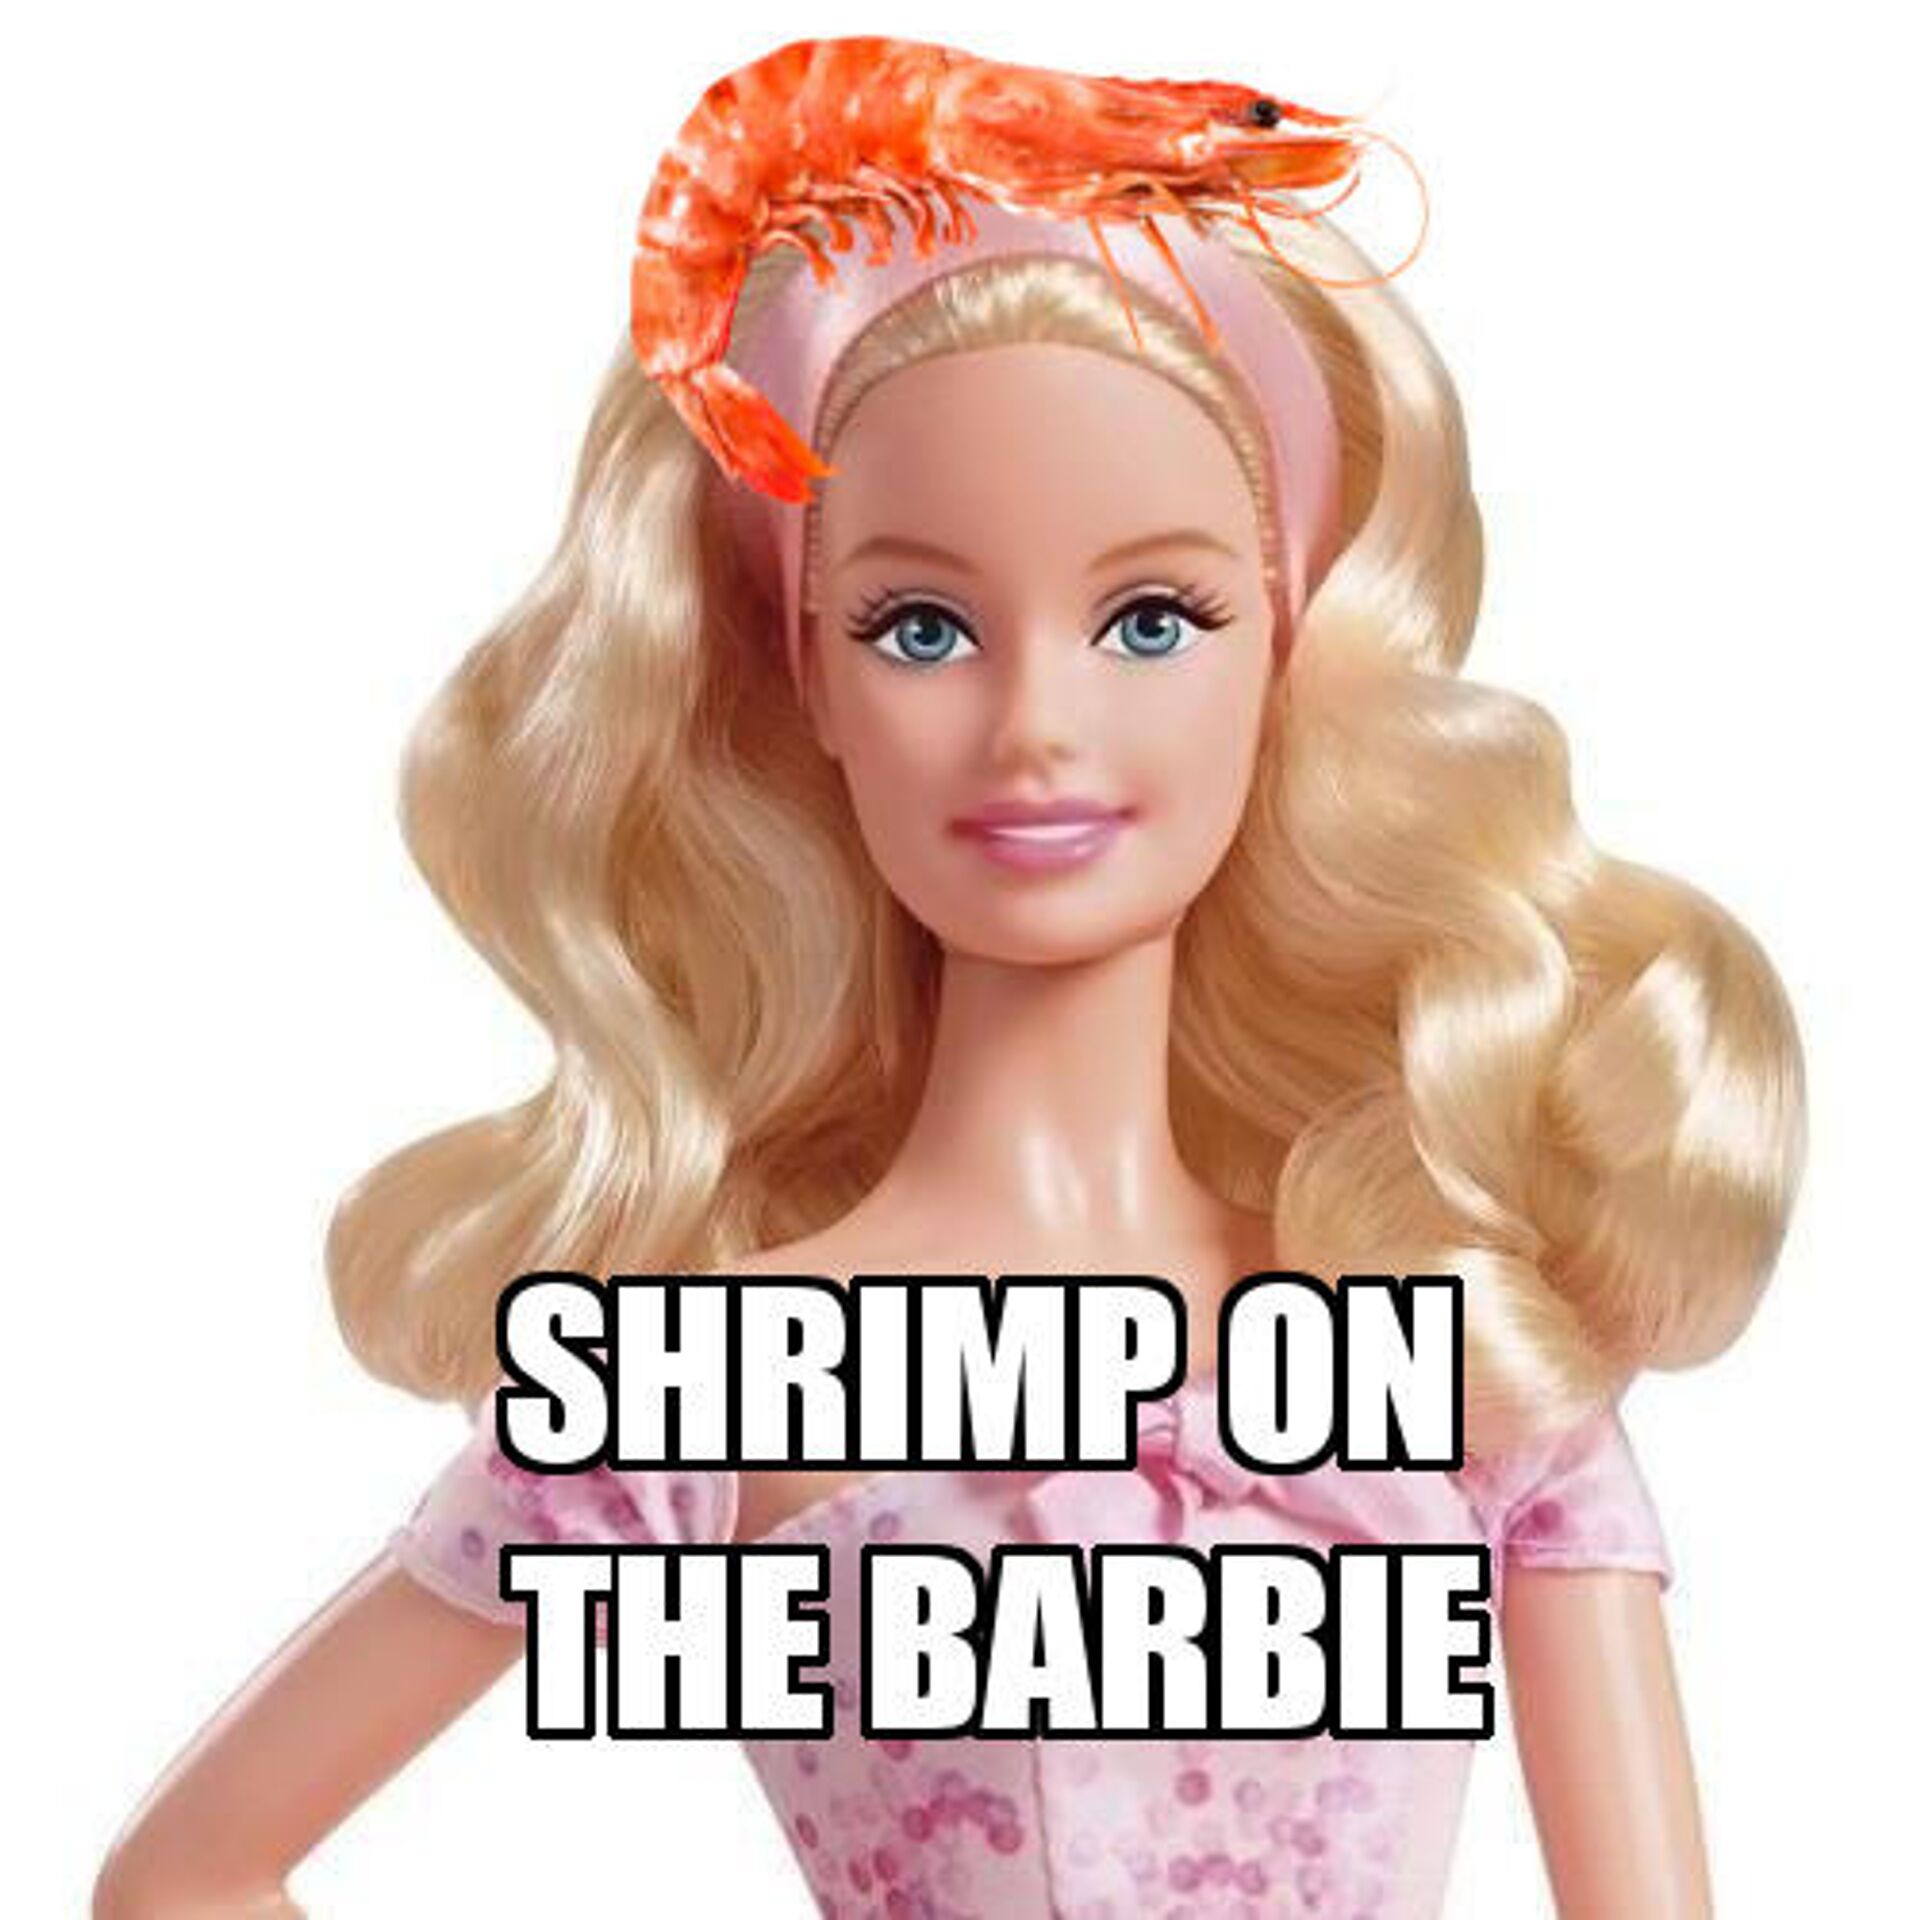 Shrimp on a barbie doll